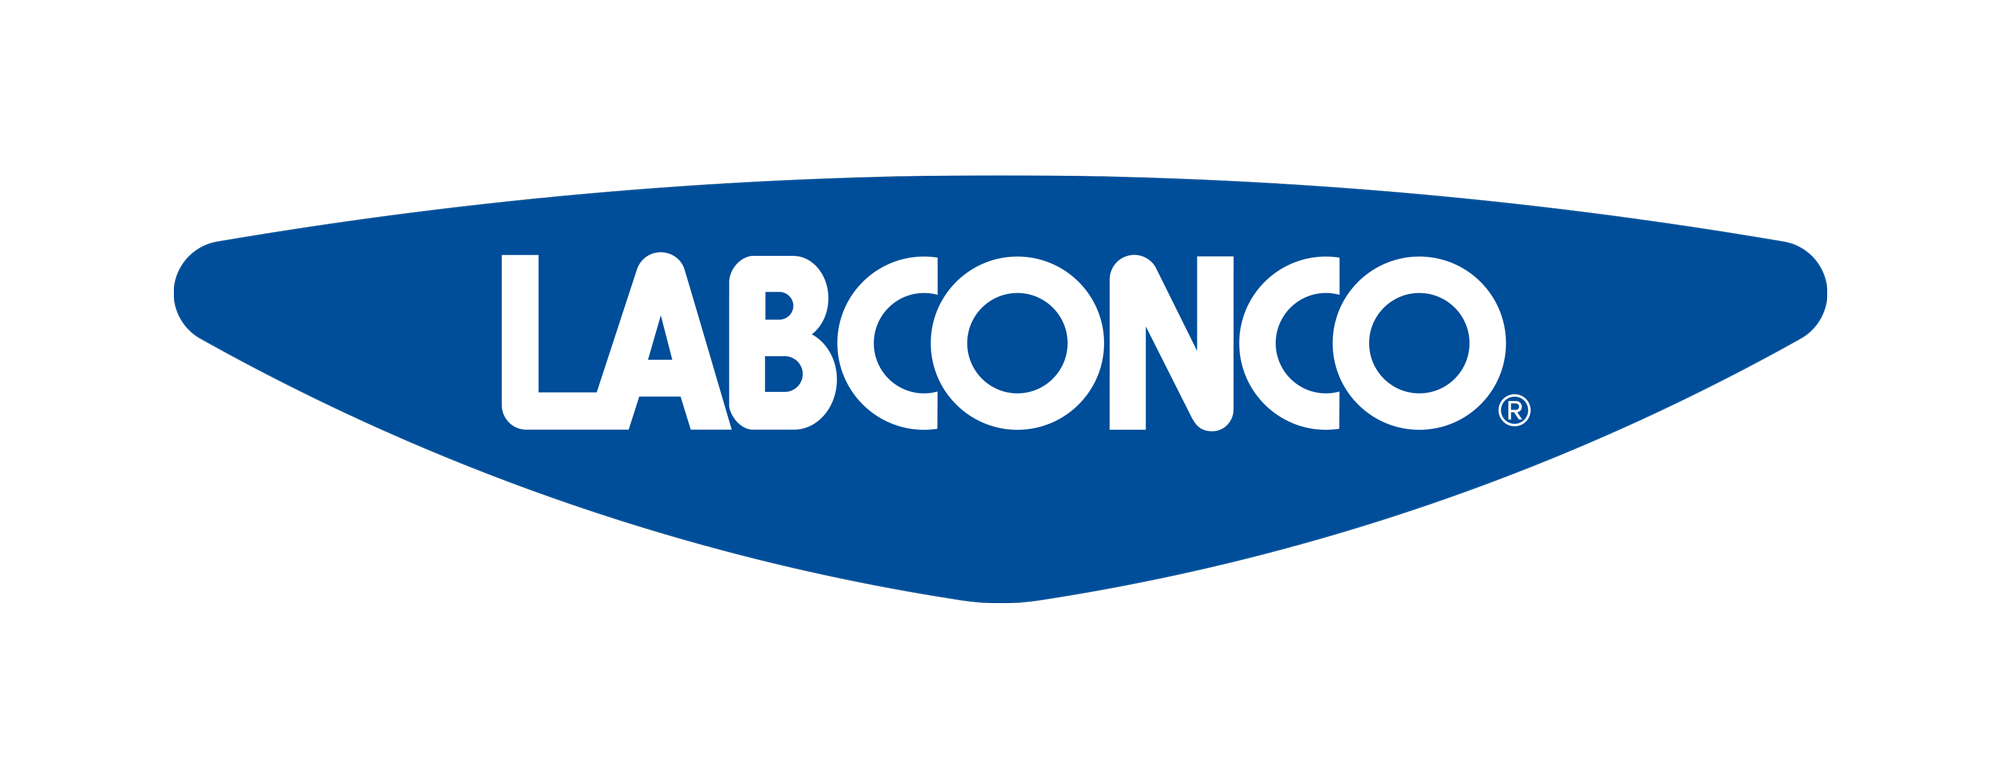 Labconco商标更换通知